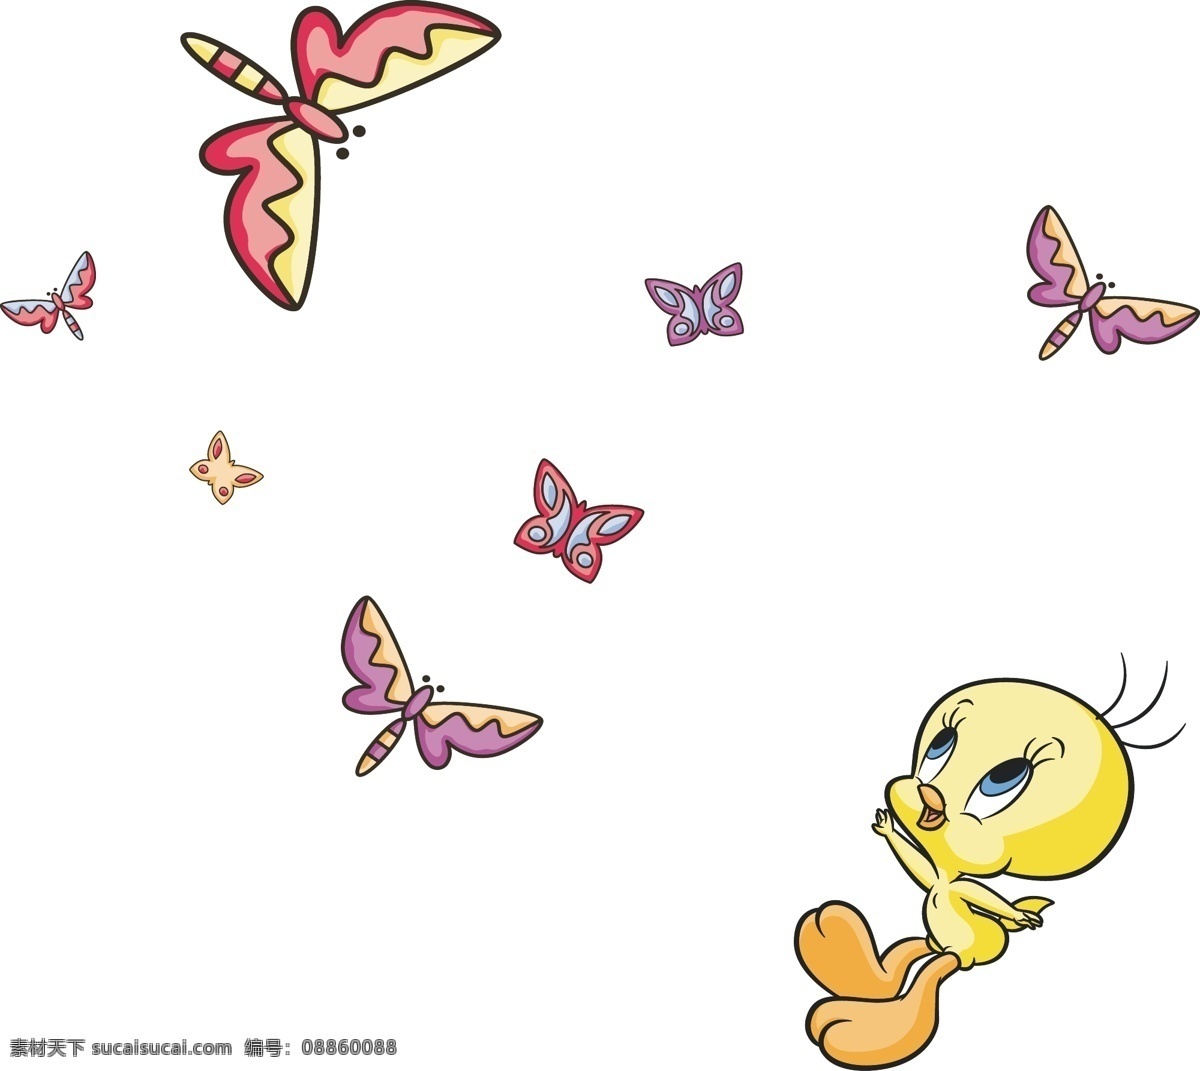 卡通鸭子 蝴蝶 翠儿 小鸭子 鸭子 动物卡通 服装印花 儿童印花 儿童图集 卡通设计 矢量